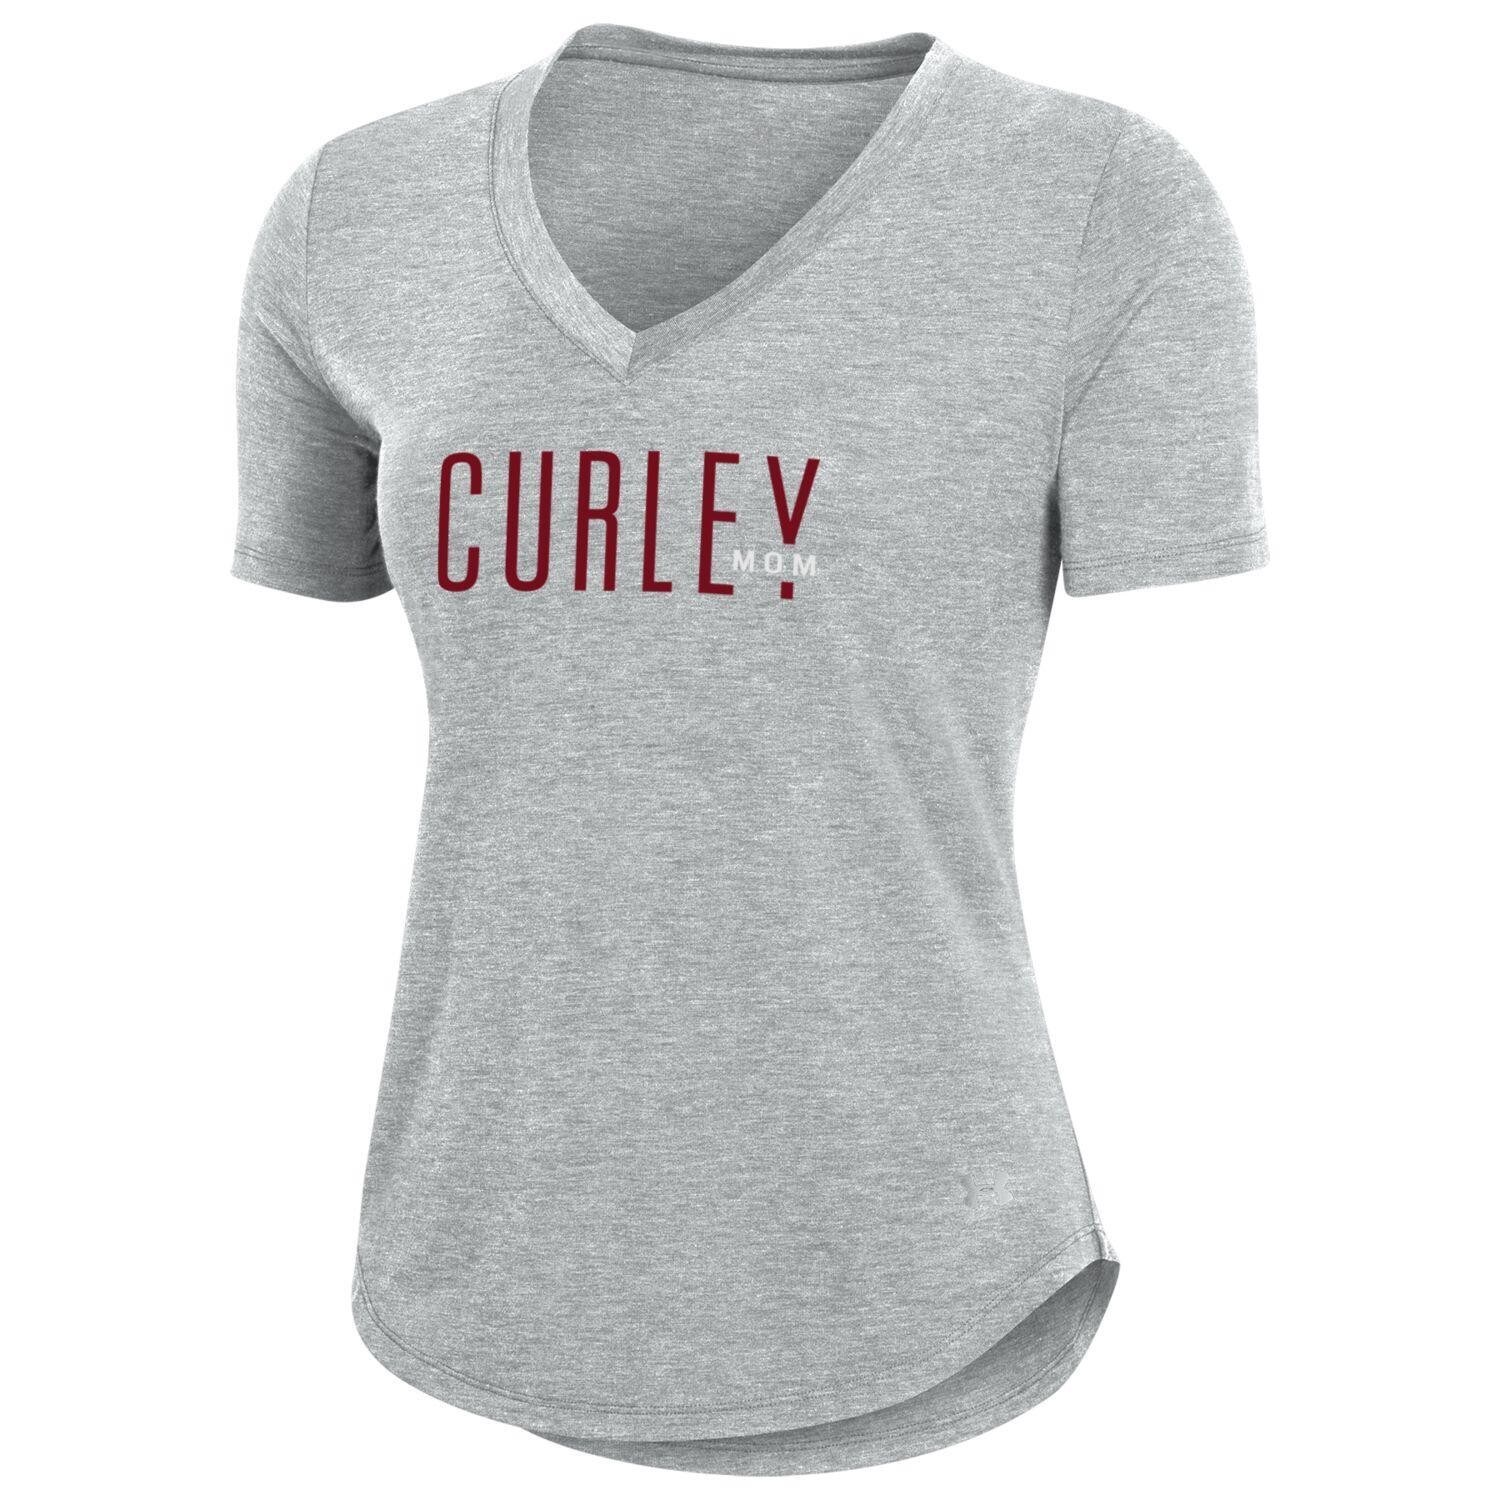 UA Womens V Neck Curley Mom T Shirt Silver S